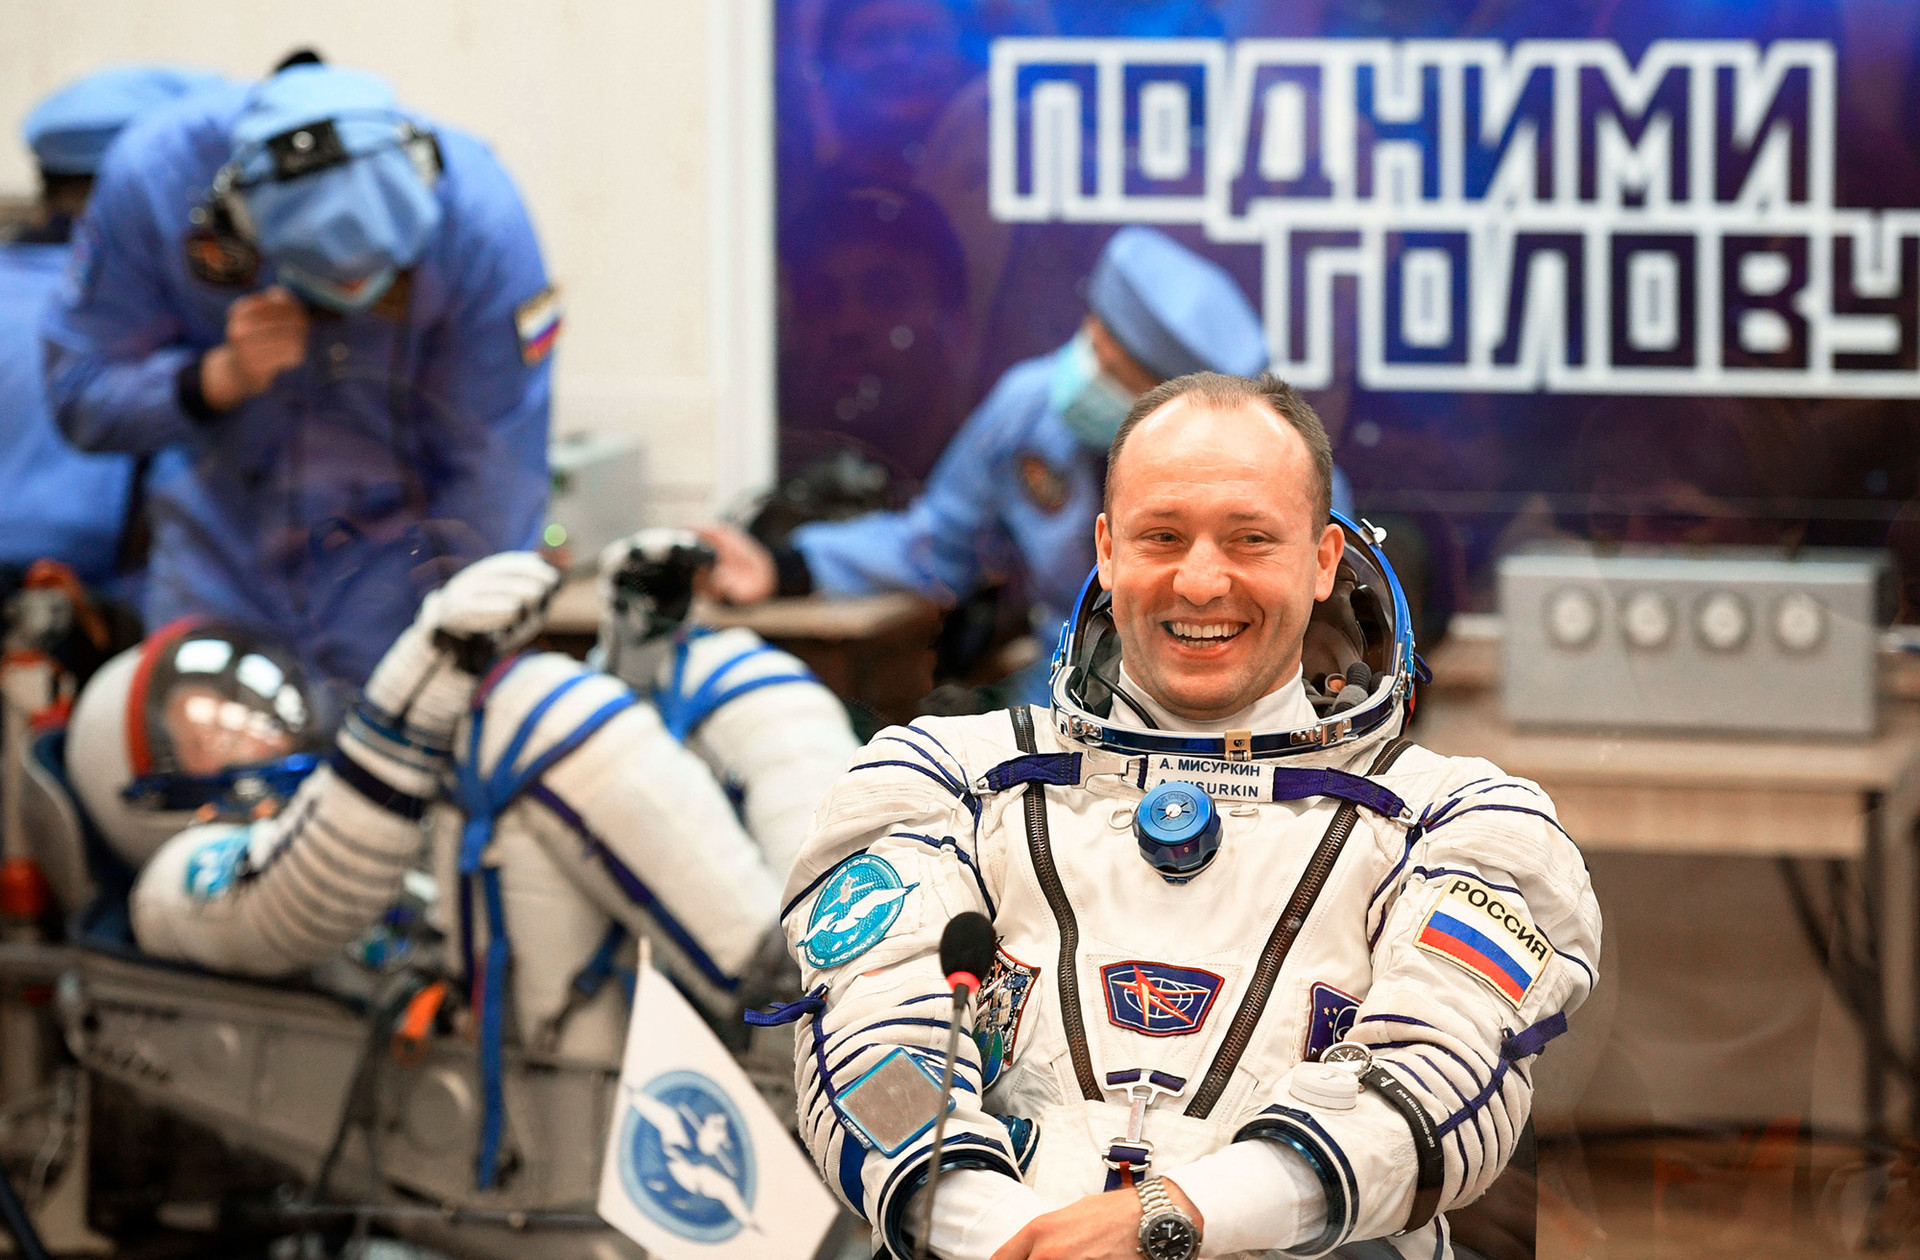 Aleksandar Misurkin, član 53./54. posade Međunarodne svemirske stanice

